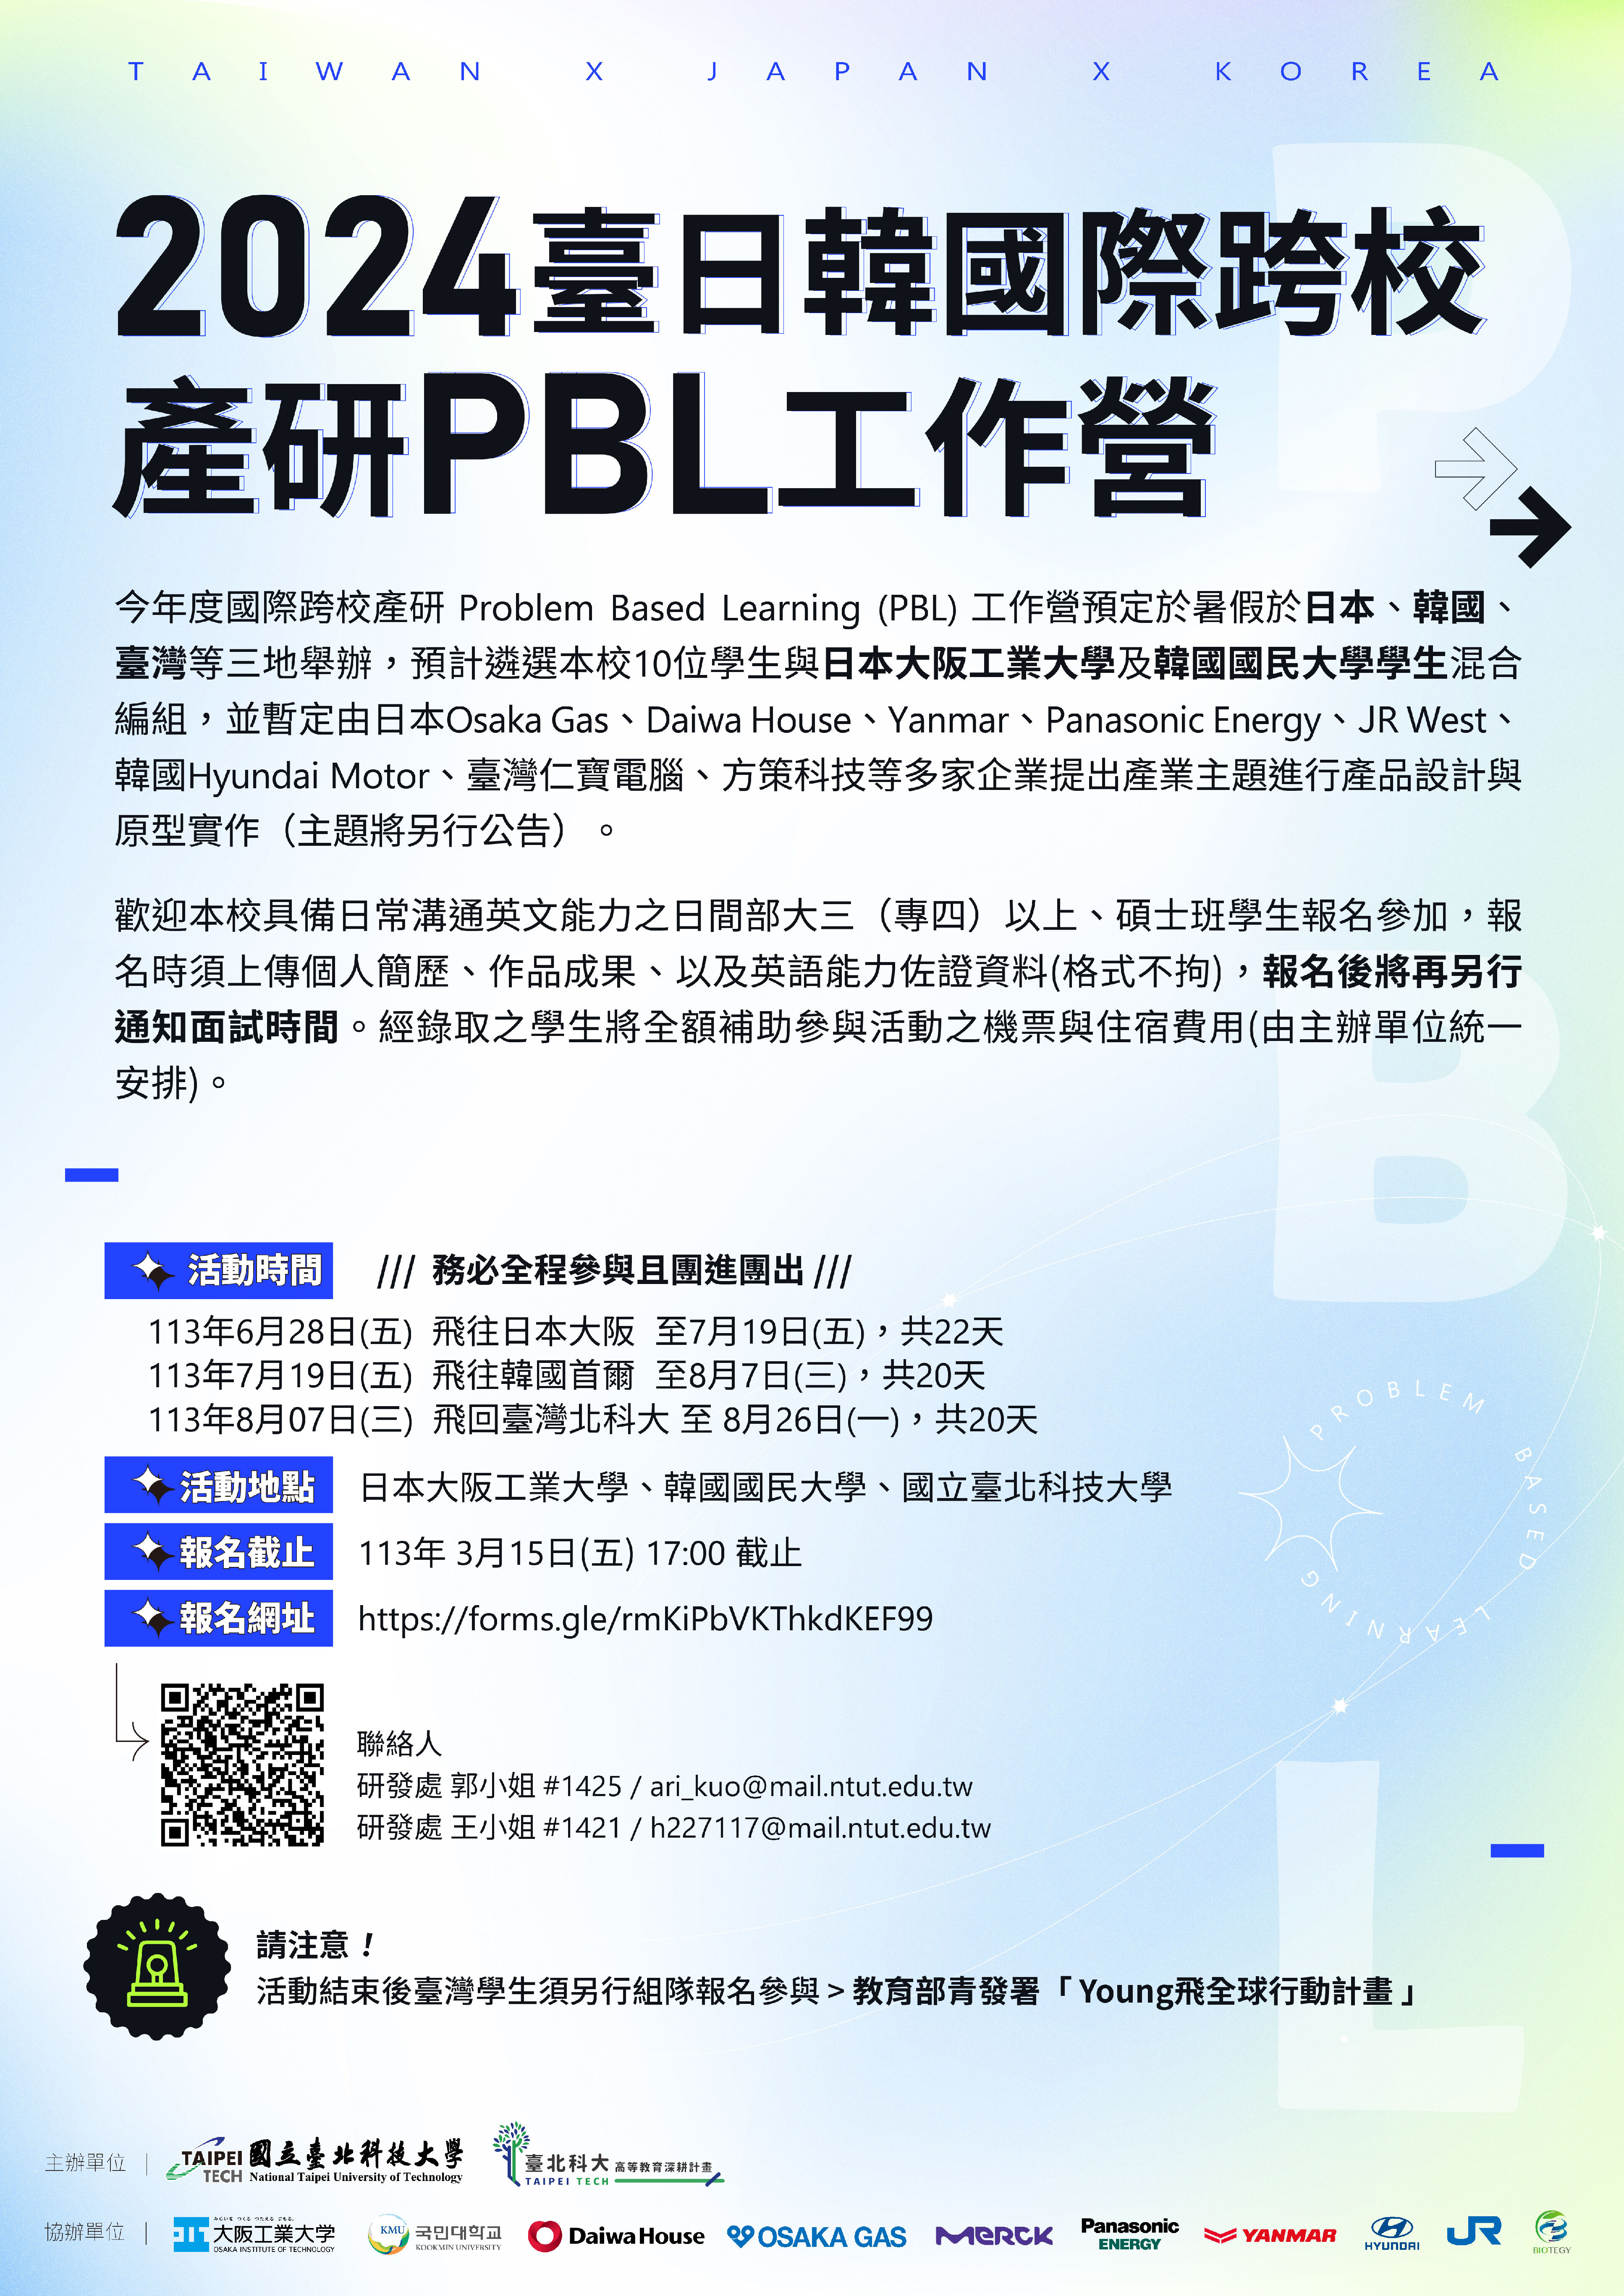 2024 國際產研PBL